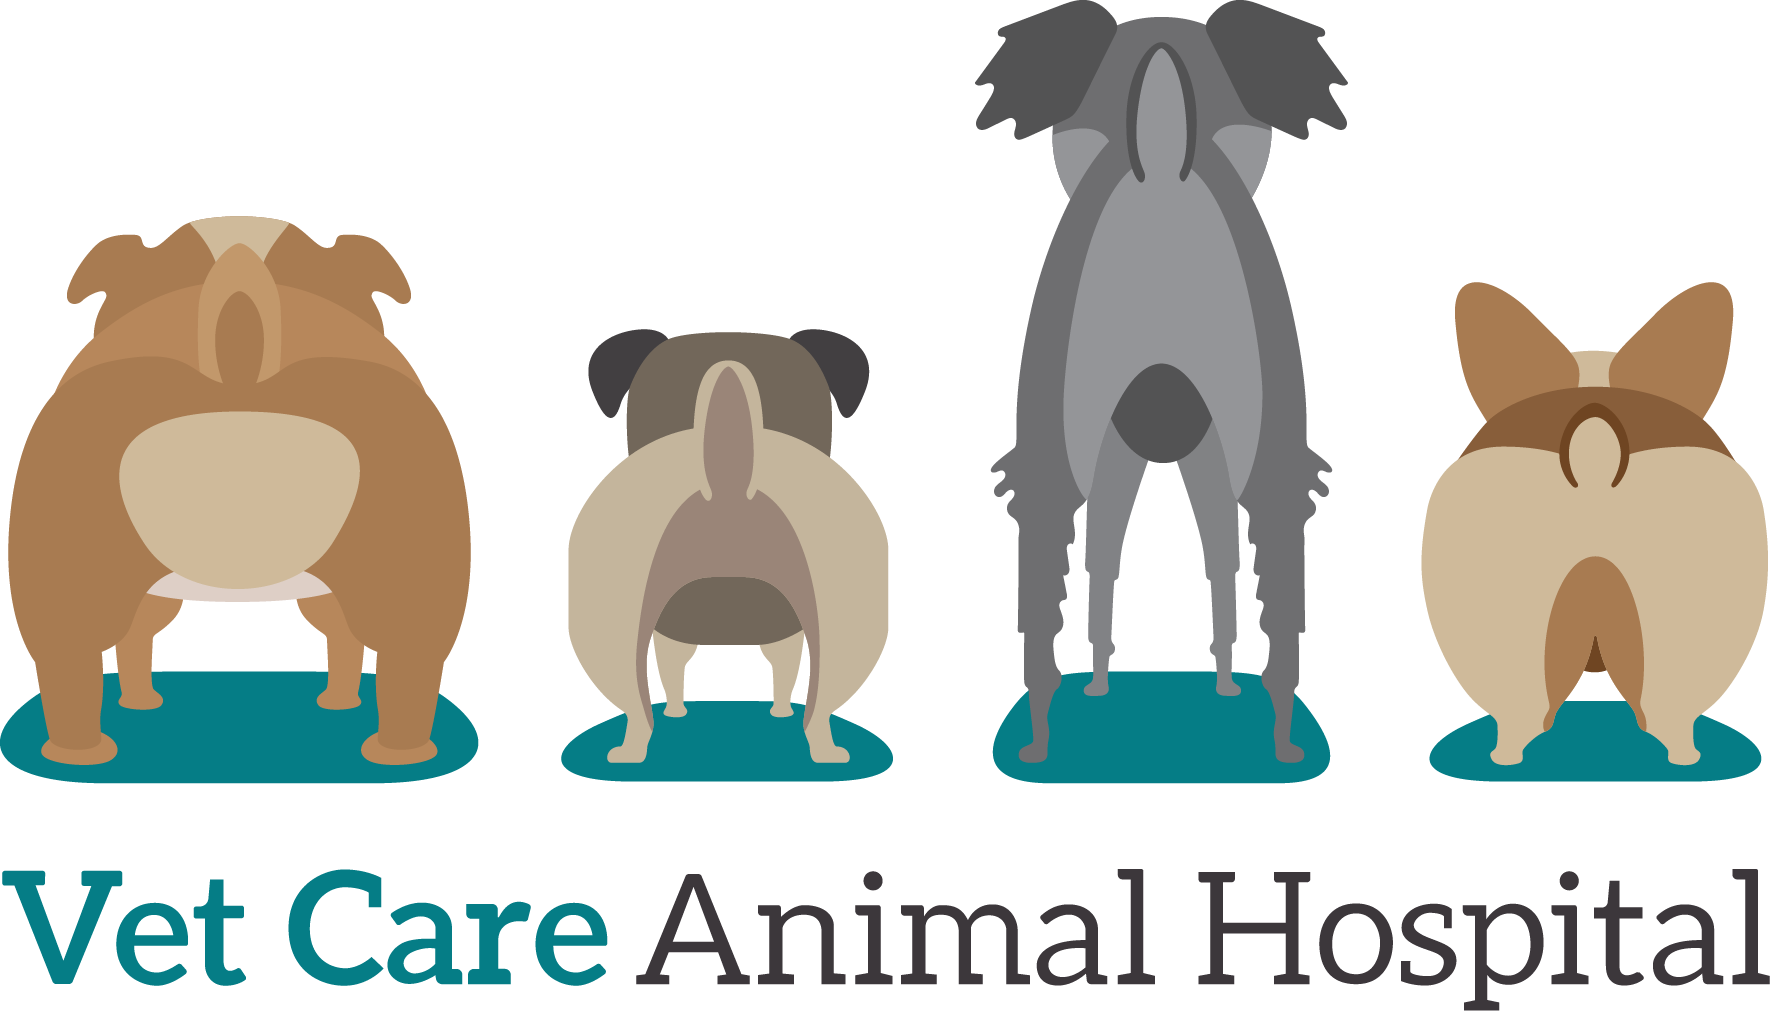 Vet Care Animal Hospital logo